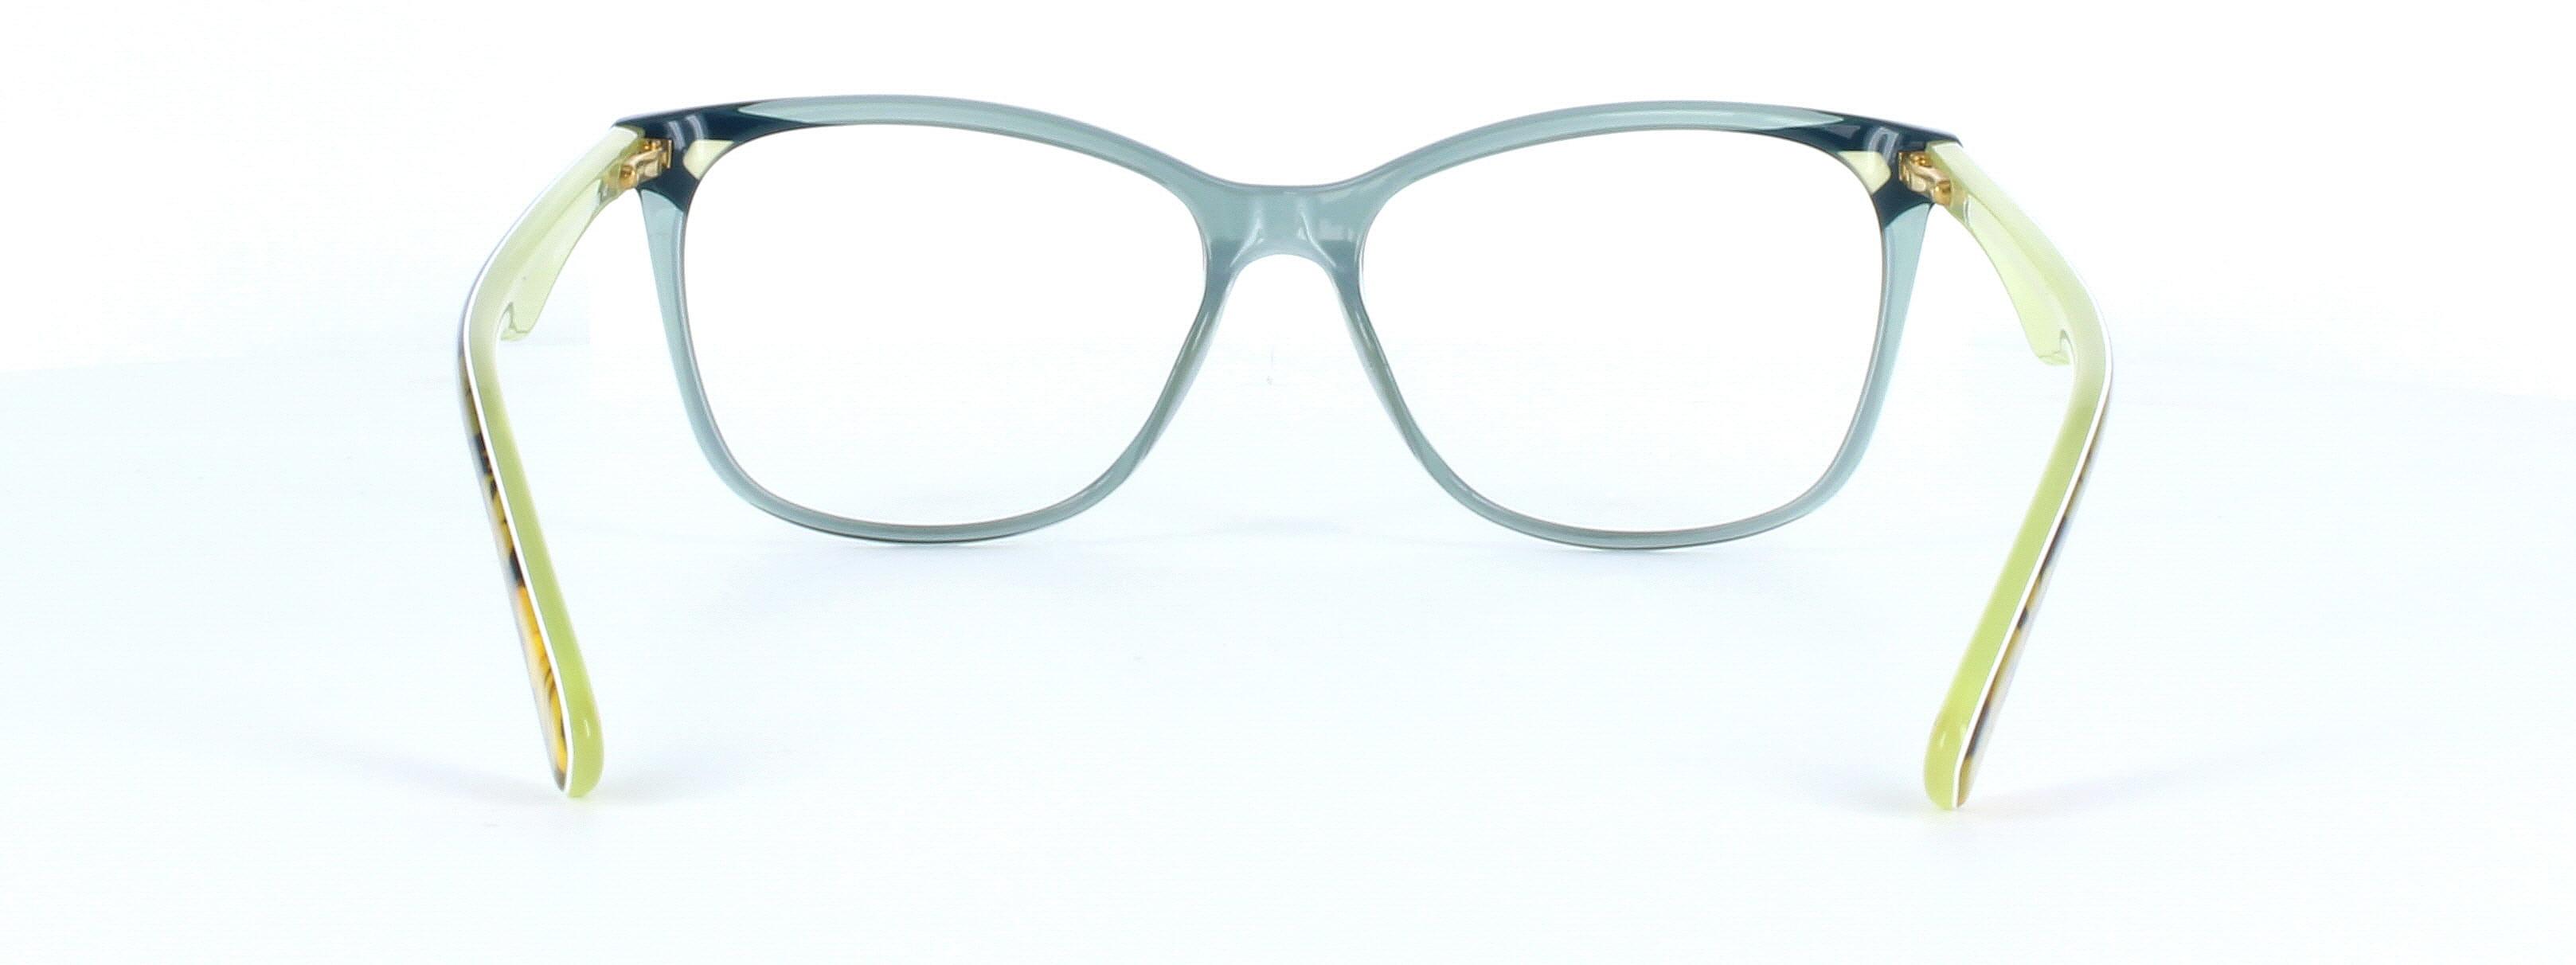 Police VPL502N - Ladies designer acetate glasses in crystal green - image view 3